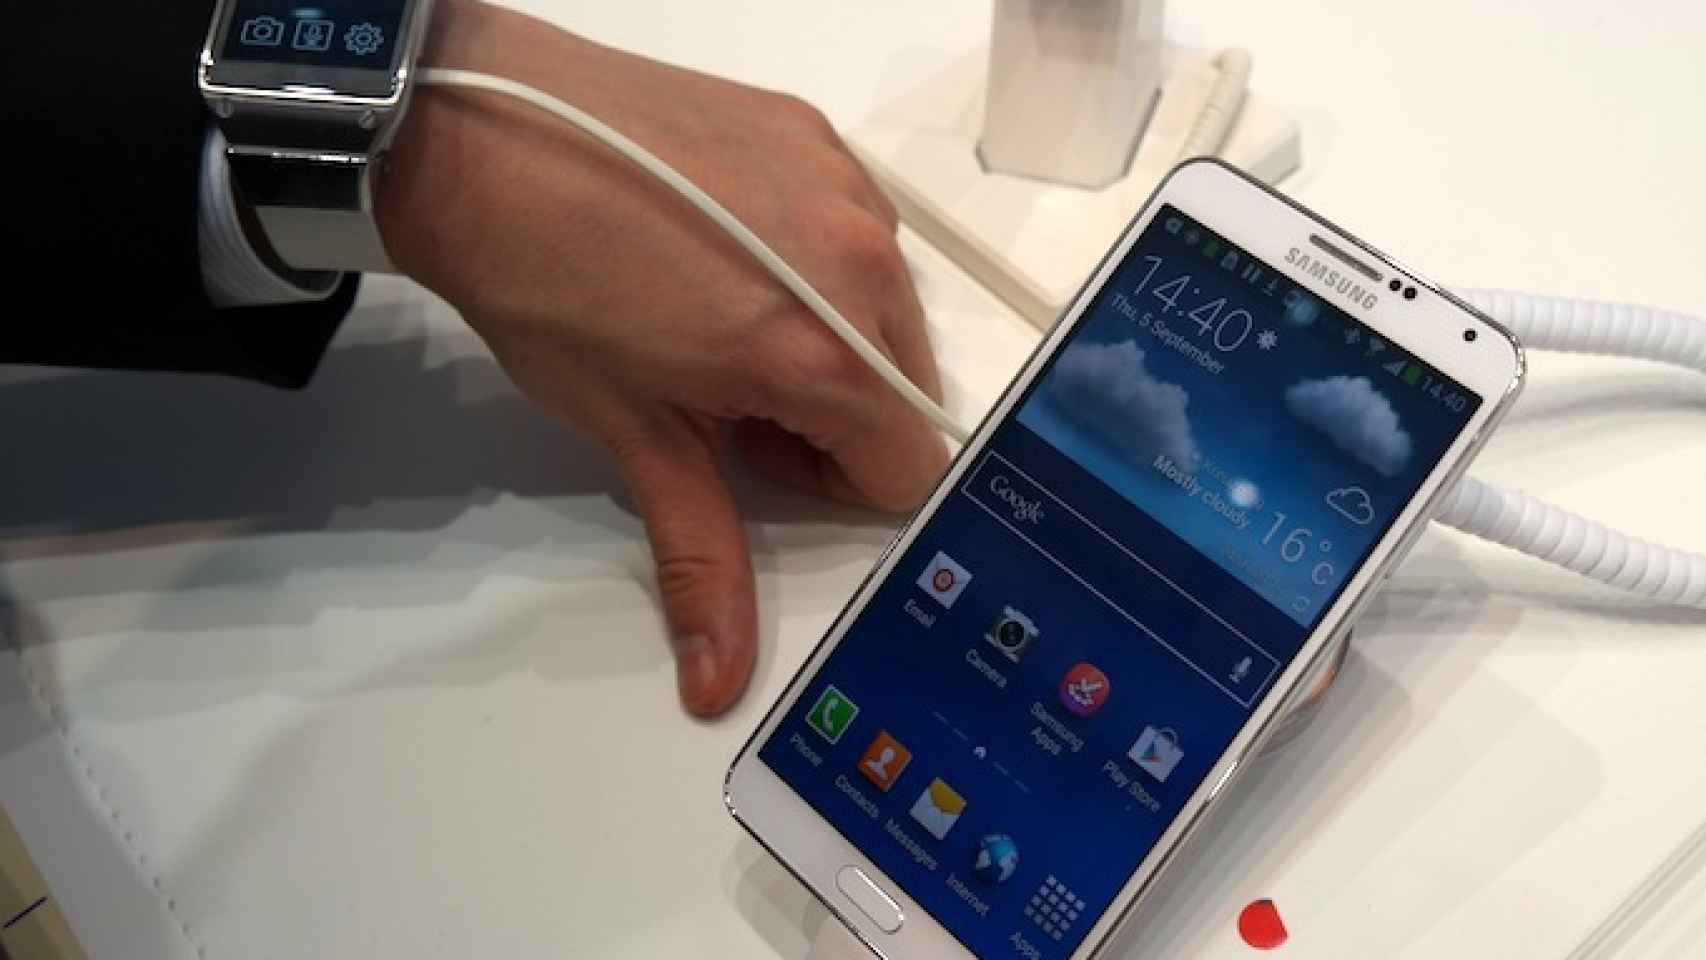 Samsung Galaxy Gear y Galaxy Note 3: Toma de contacto